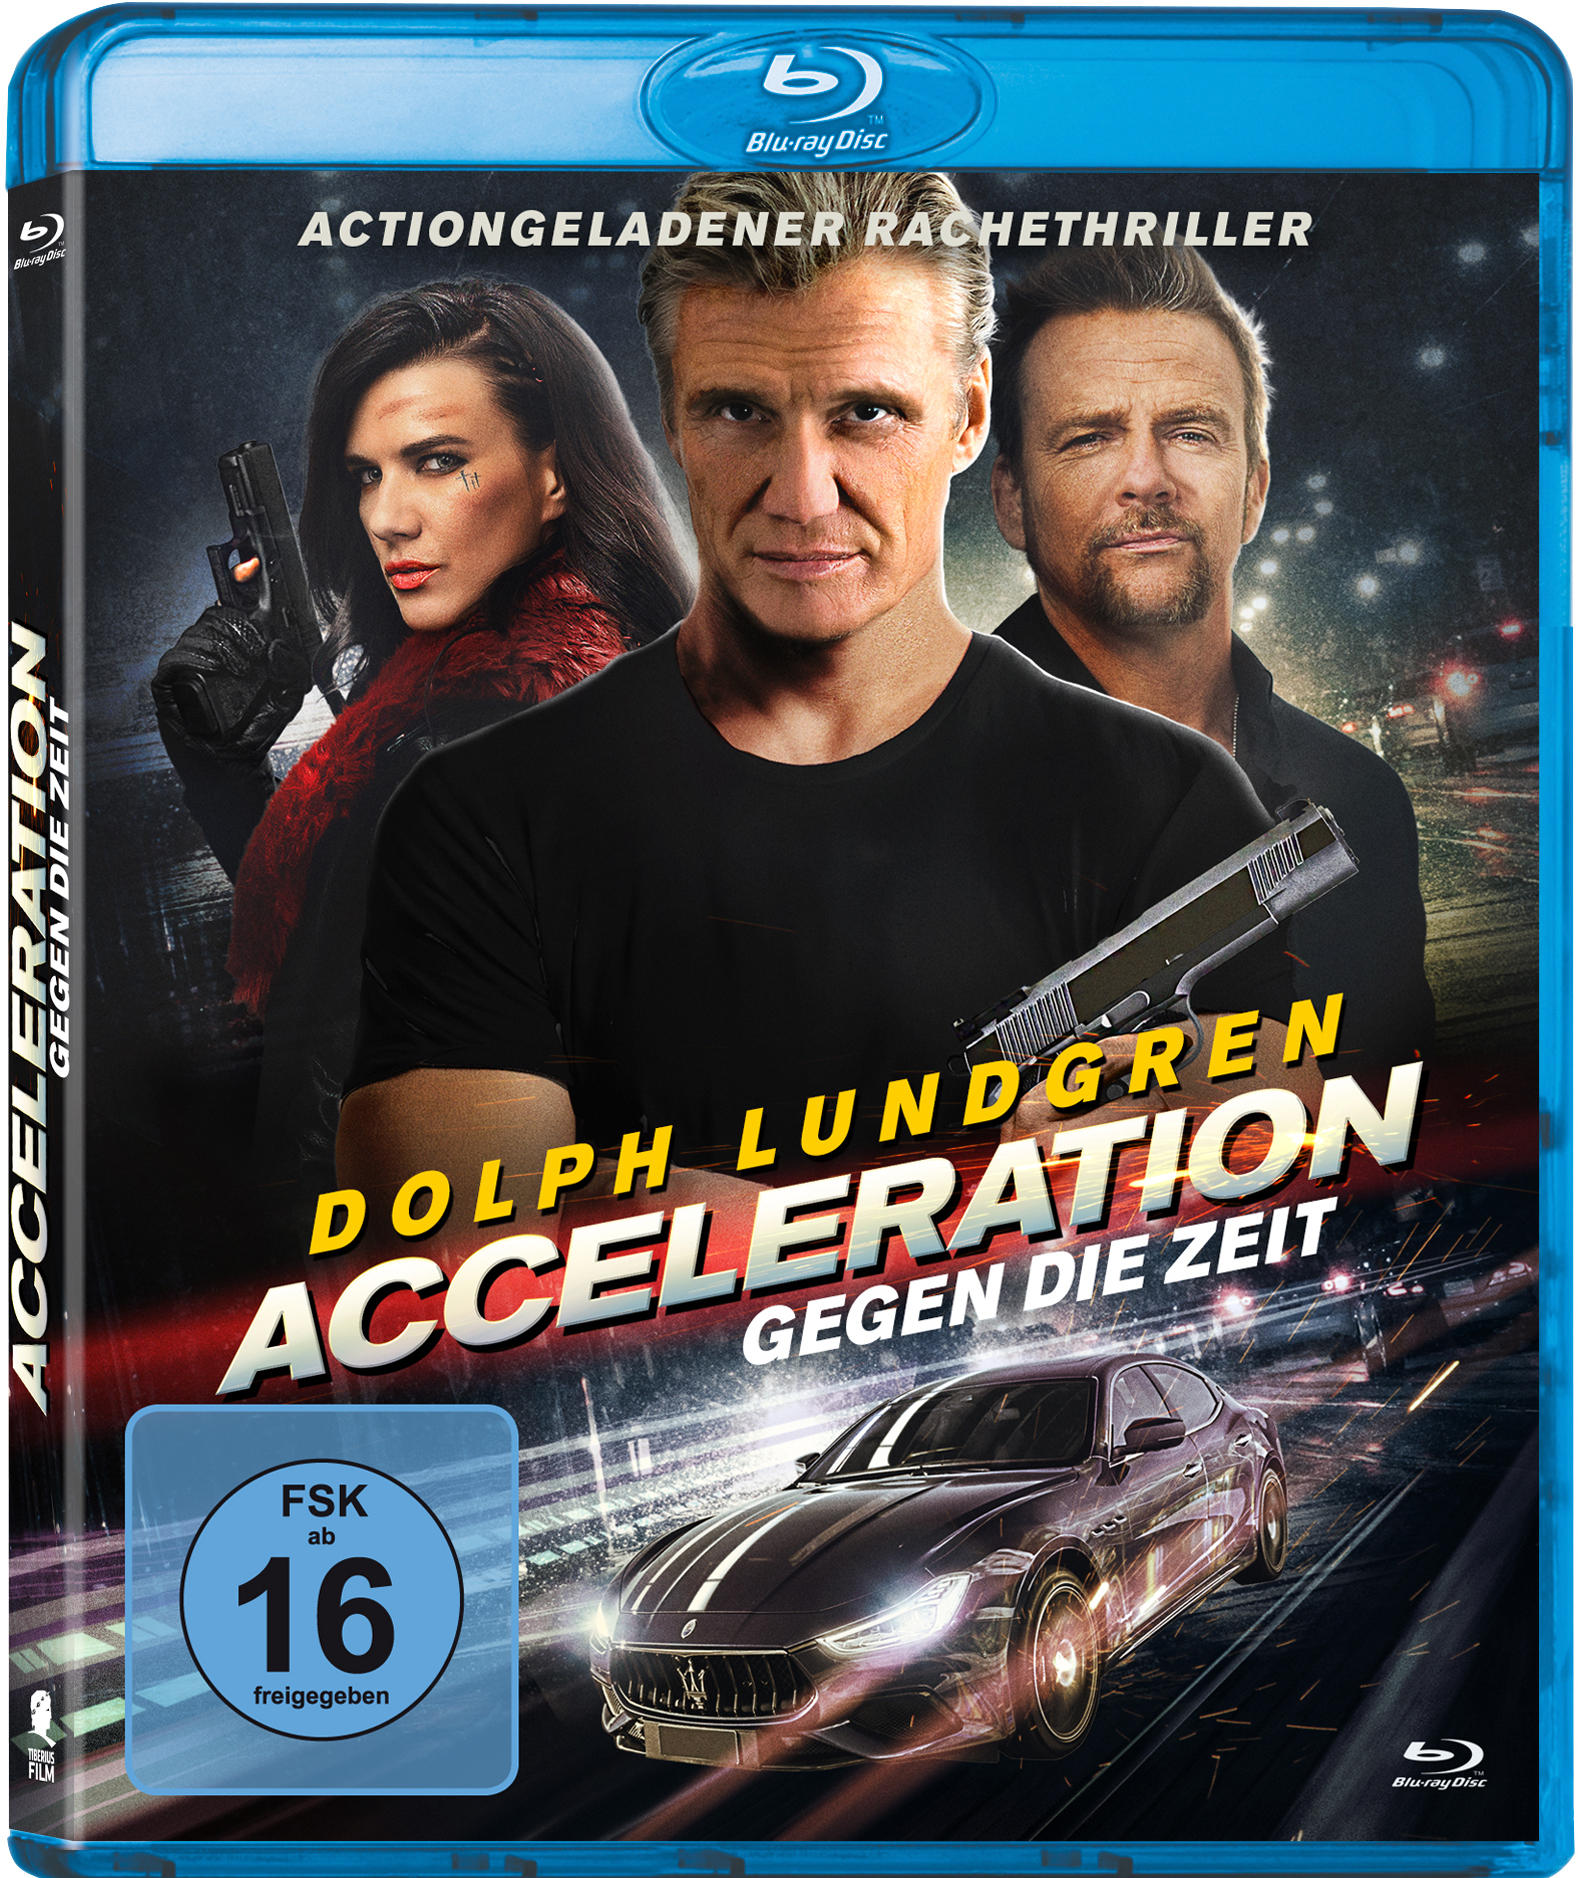 Acceleration - Gegen die Blu-ray Zeit